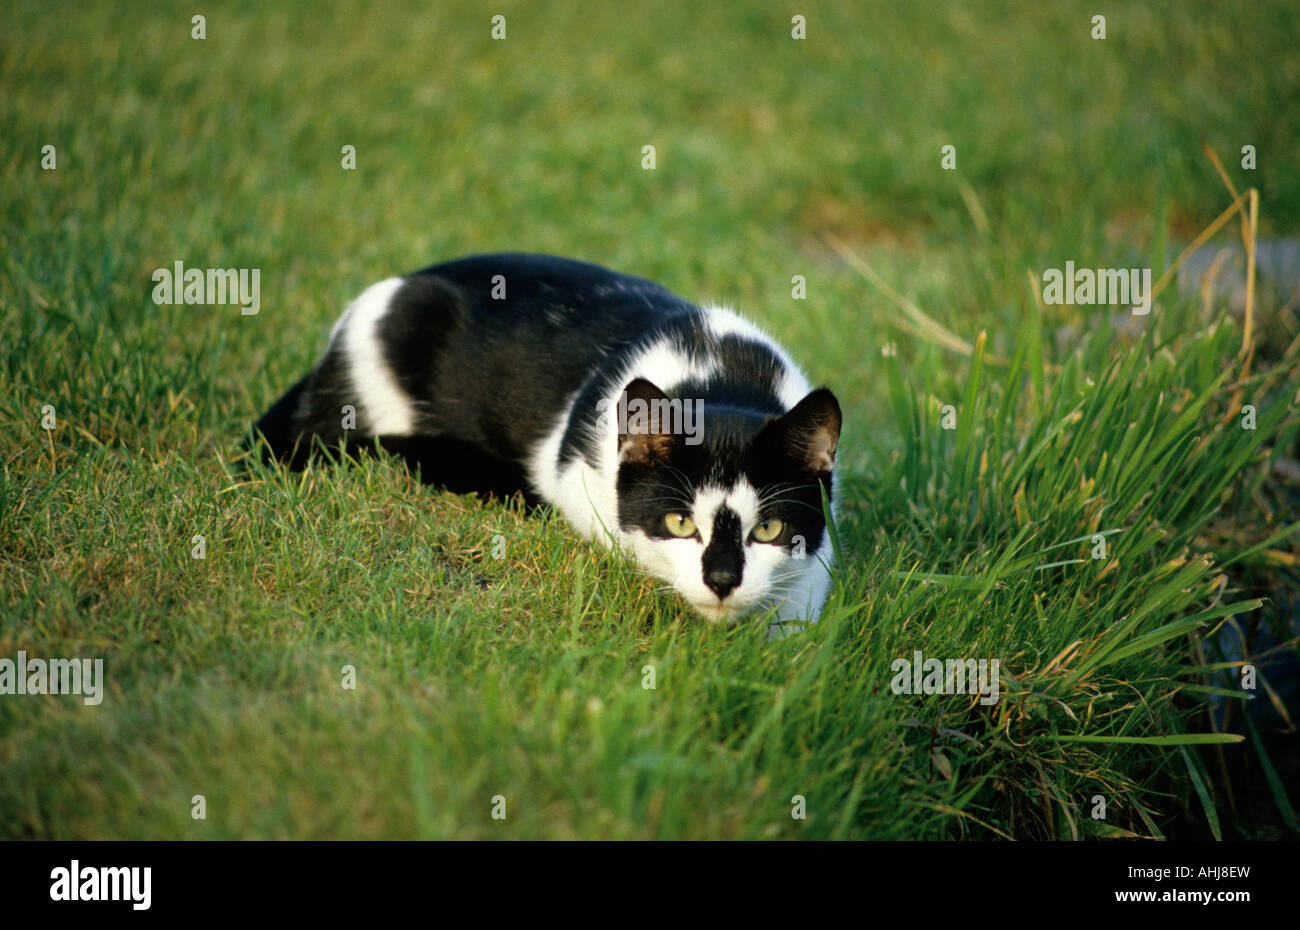 Hauskatze schwarz weiß schleichend domestic cat black and white creeping Stock Photo